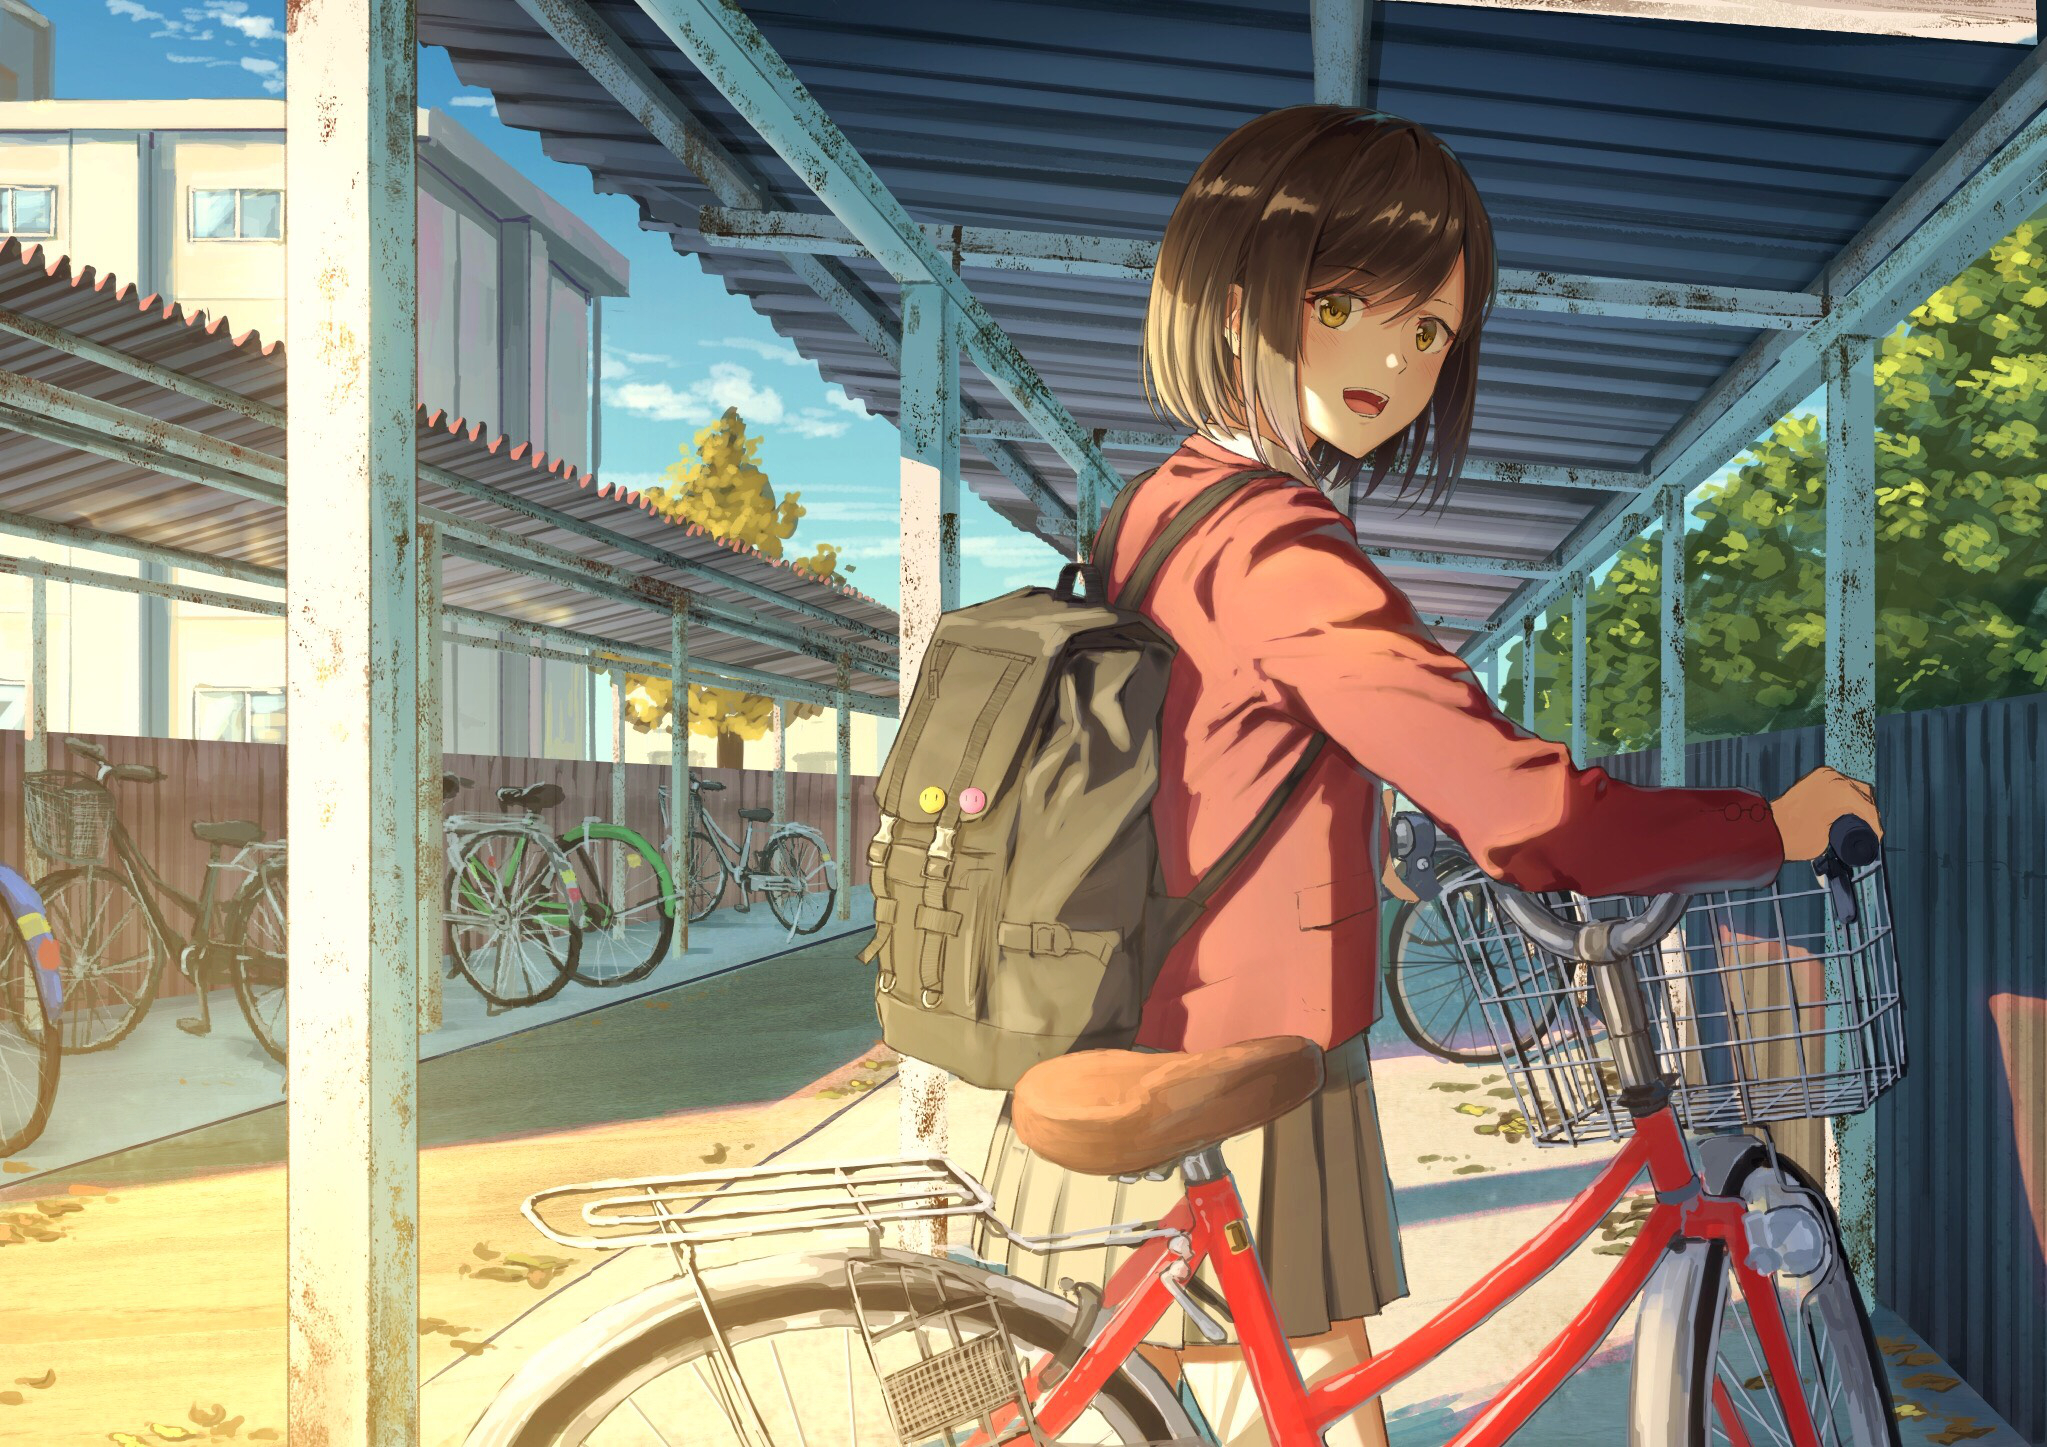 Anime 2047x1447 sunlight schoolgirl open mouth short hair backpacks sky brunette brown eyes bicycle anime girls Sugi87